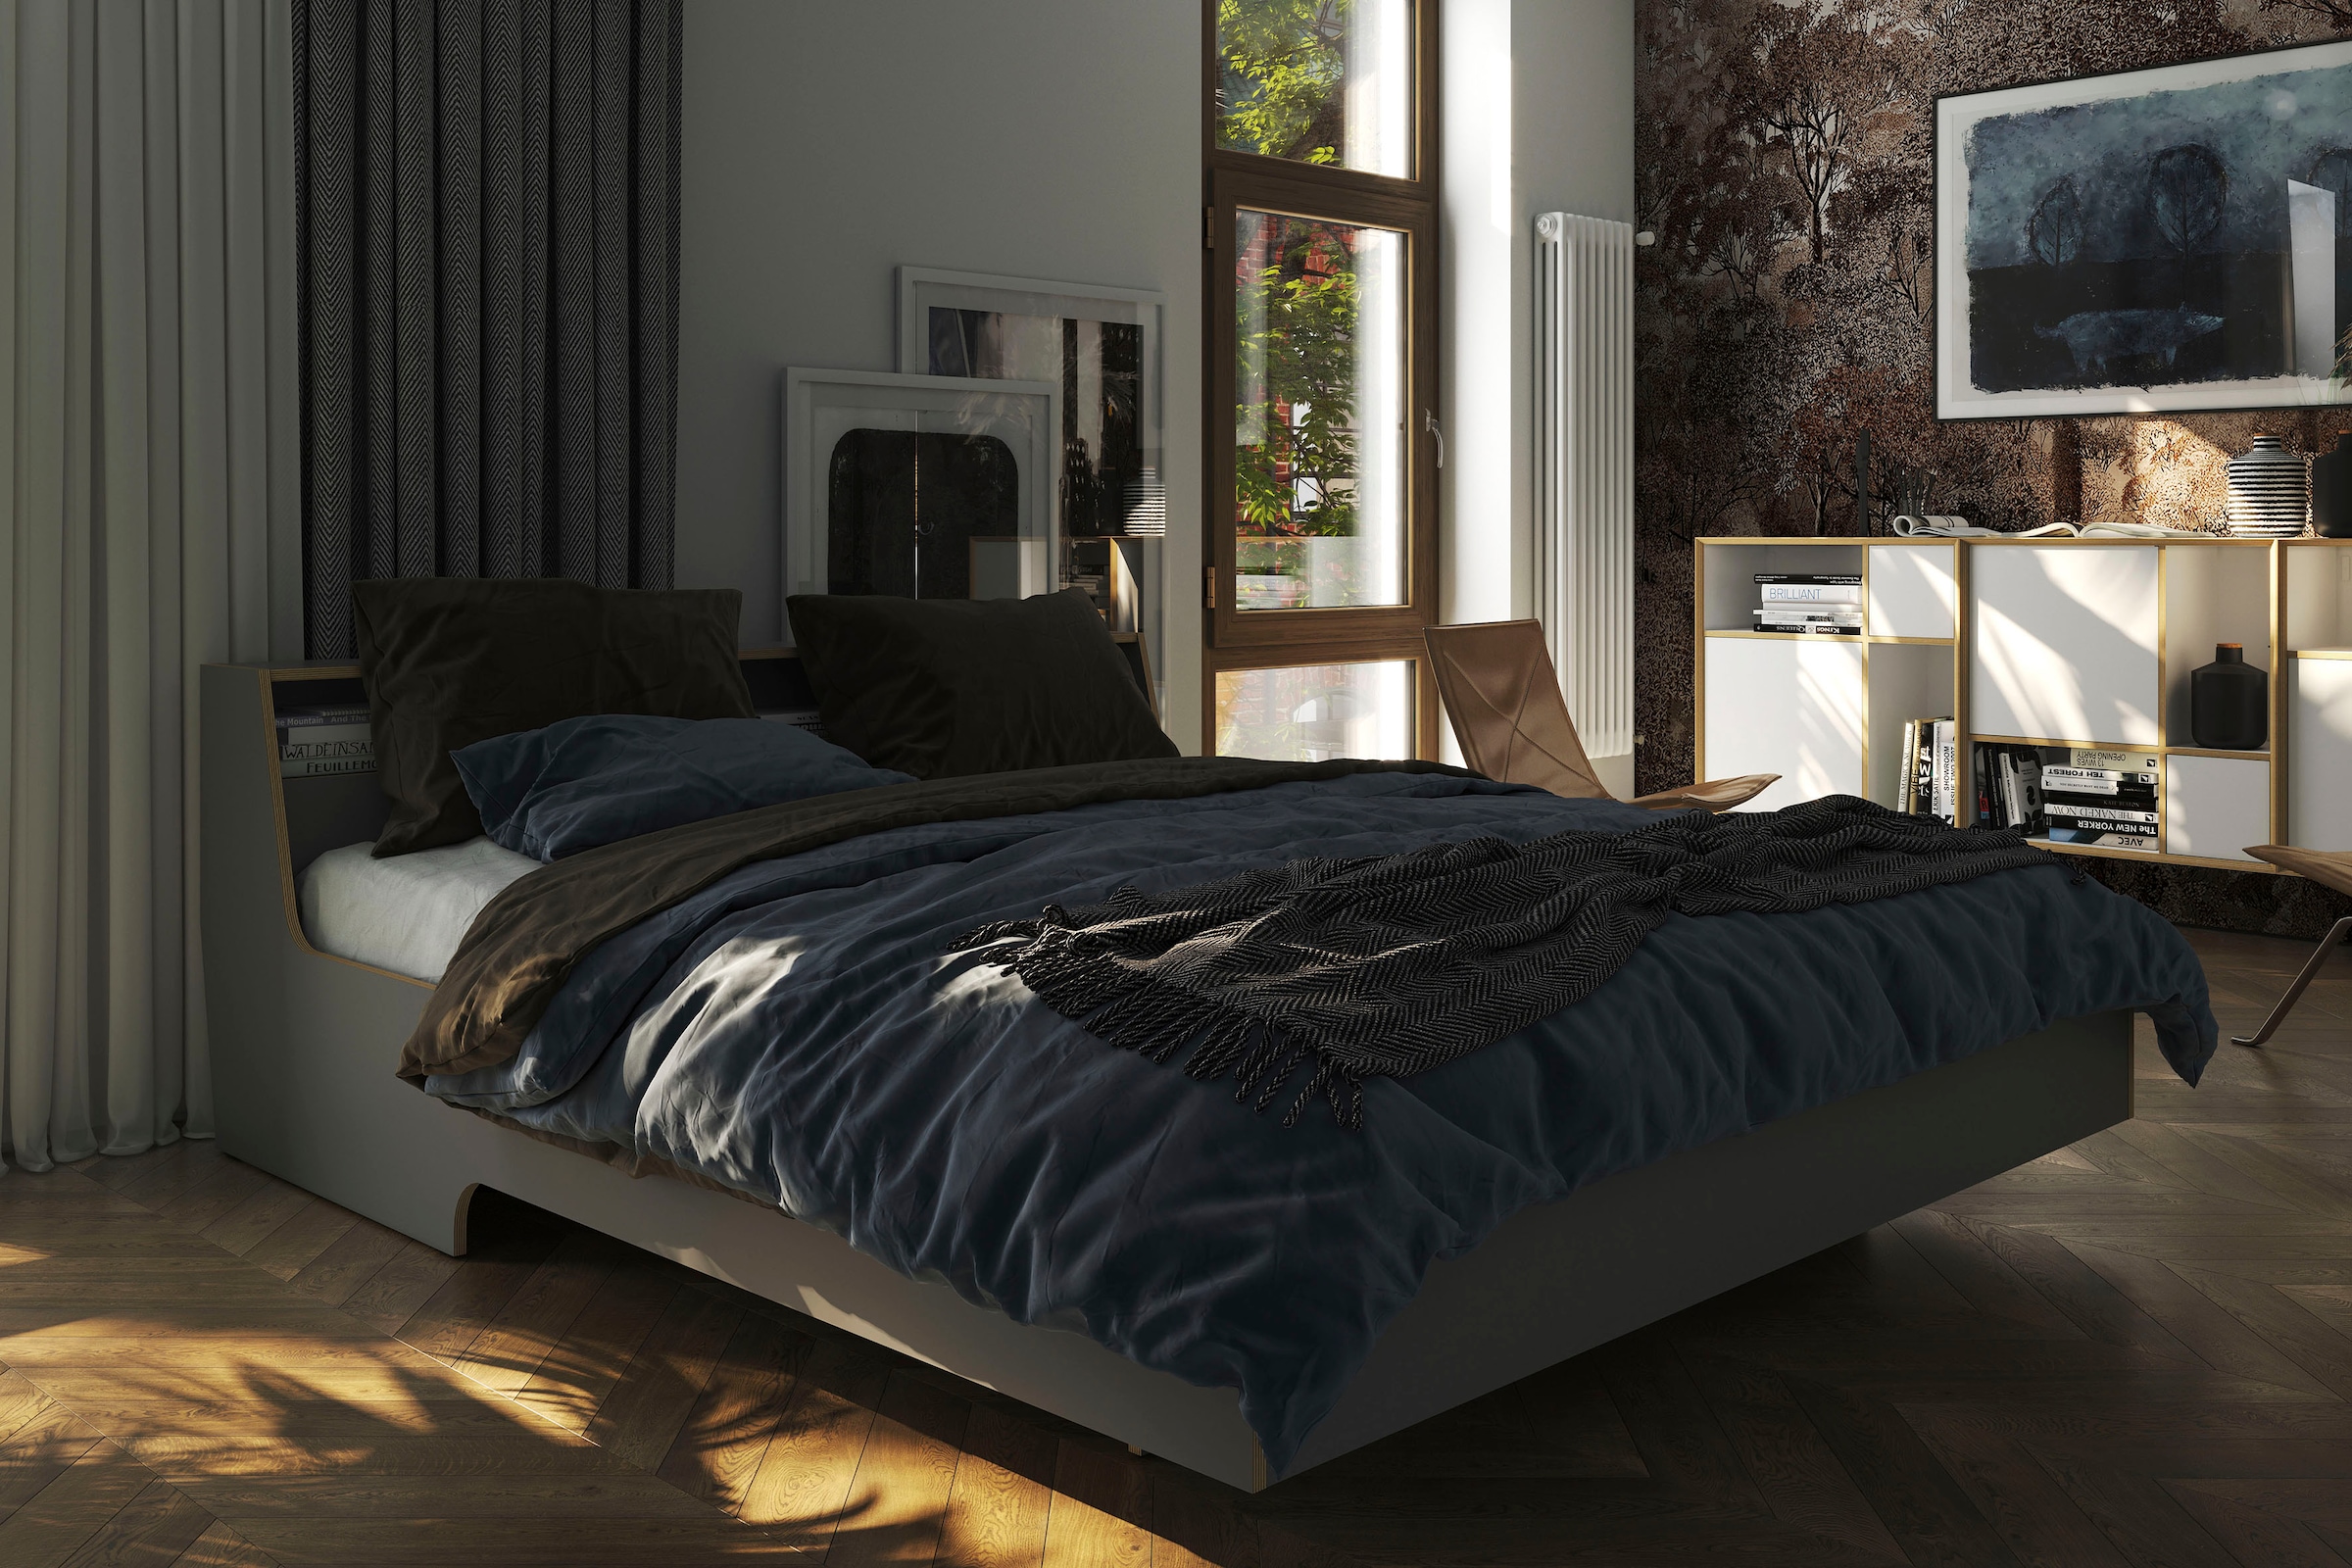 Müller SMALL LIVING Stapelbett »STAPELLIEGE Komfort (eine Liege)«,  Komforthöhe 27.5 cm, ausgezeichnet mit dem German Design Award - 2019 jetzt  kaufen